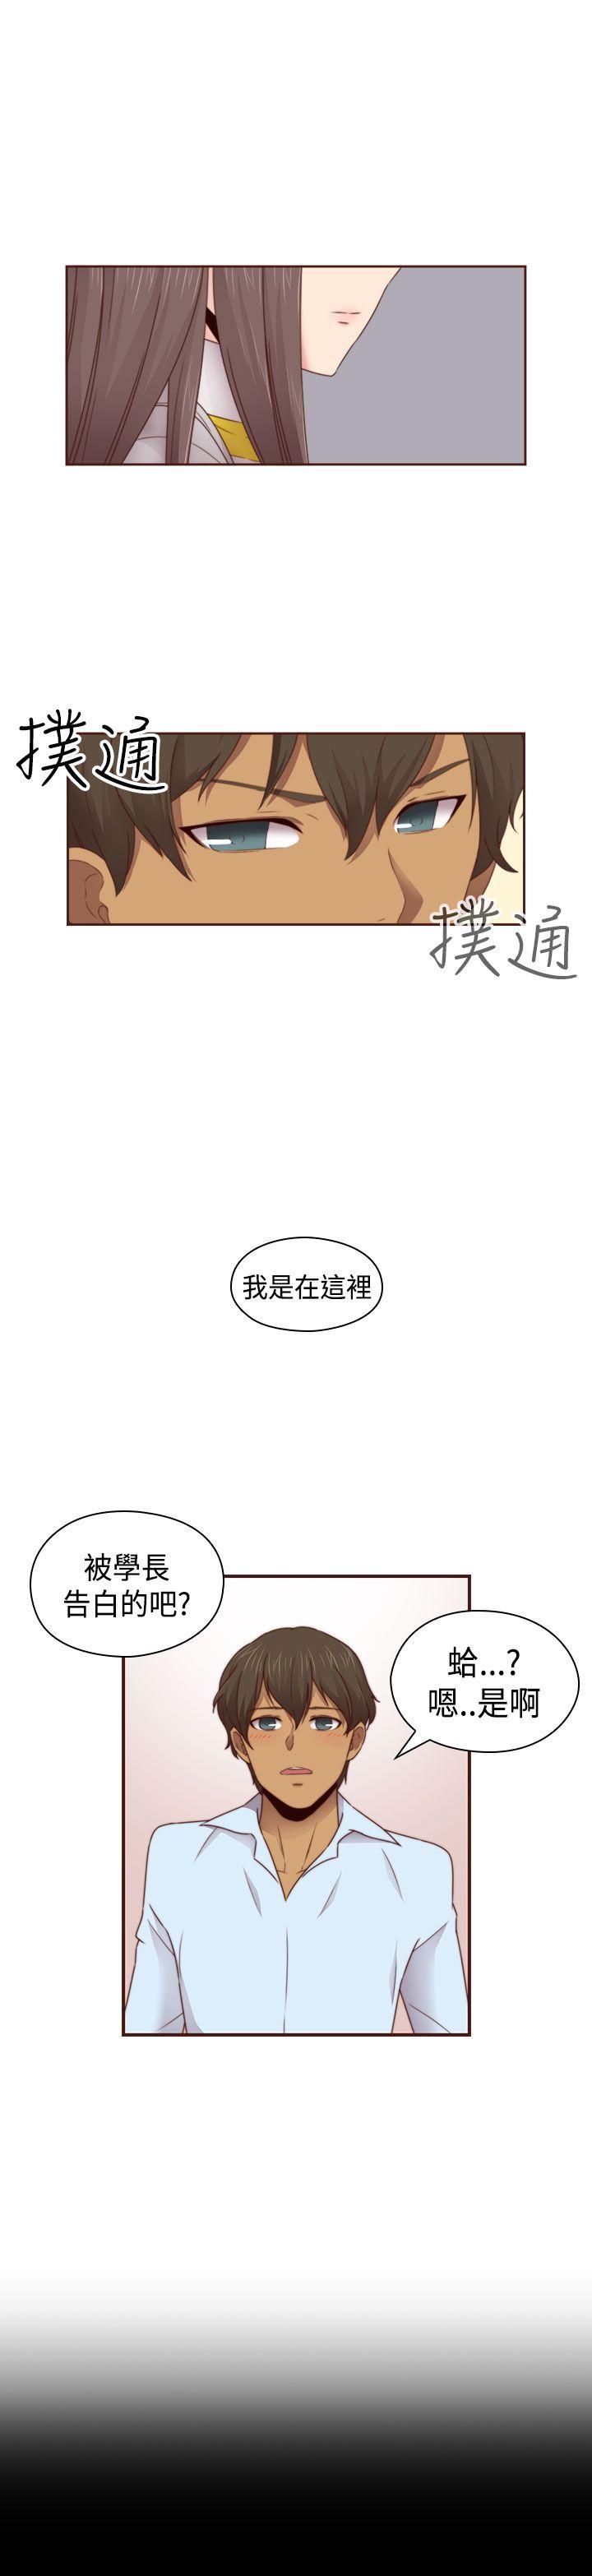 韩国污漫画 H校園 第68话 16